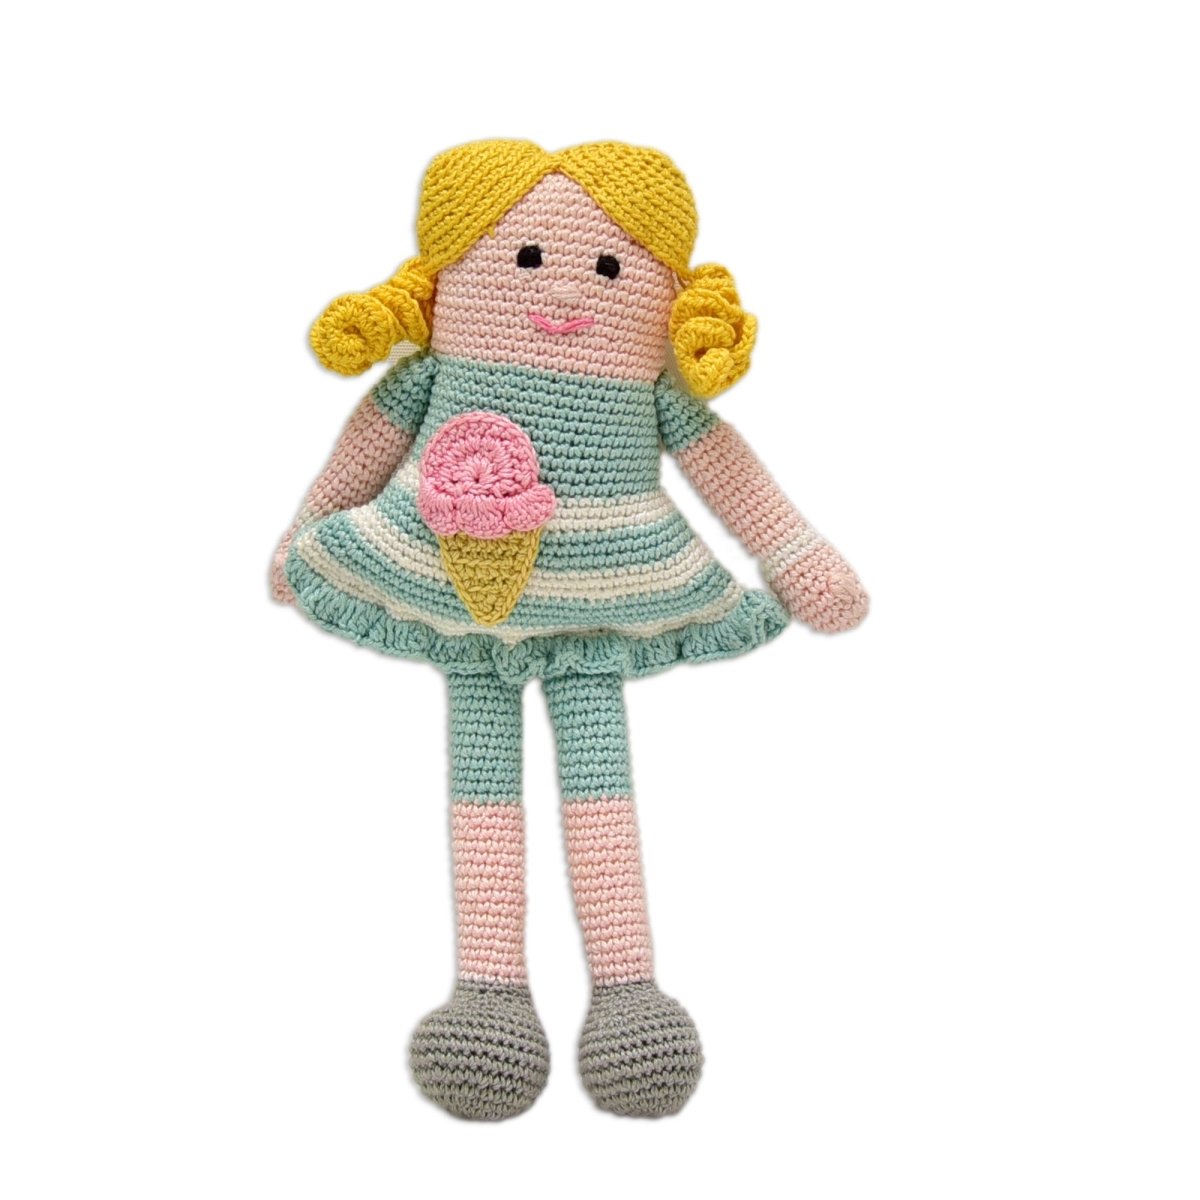 Happy Threads Handcrafted Amigurumi- Mellz Doll - ID23A063